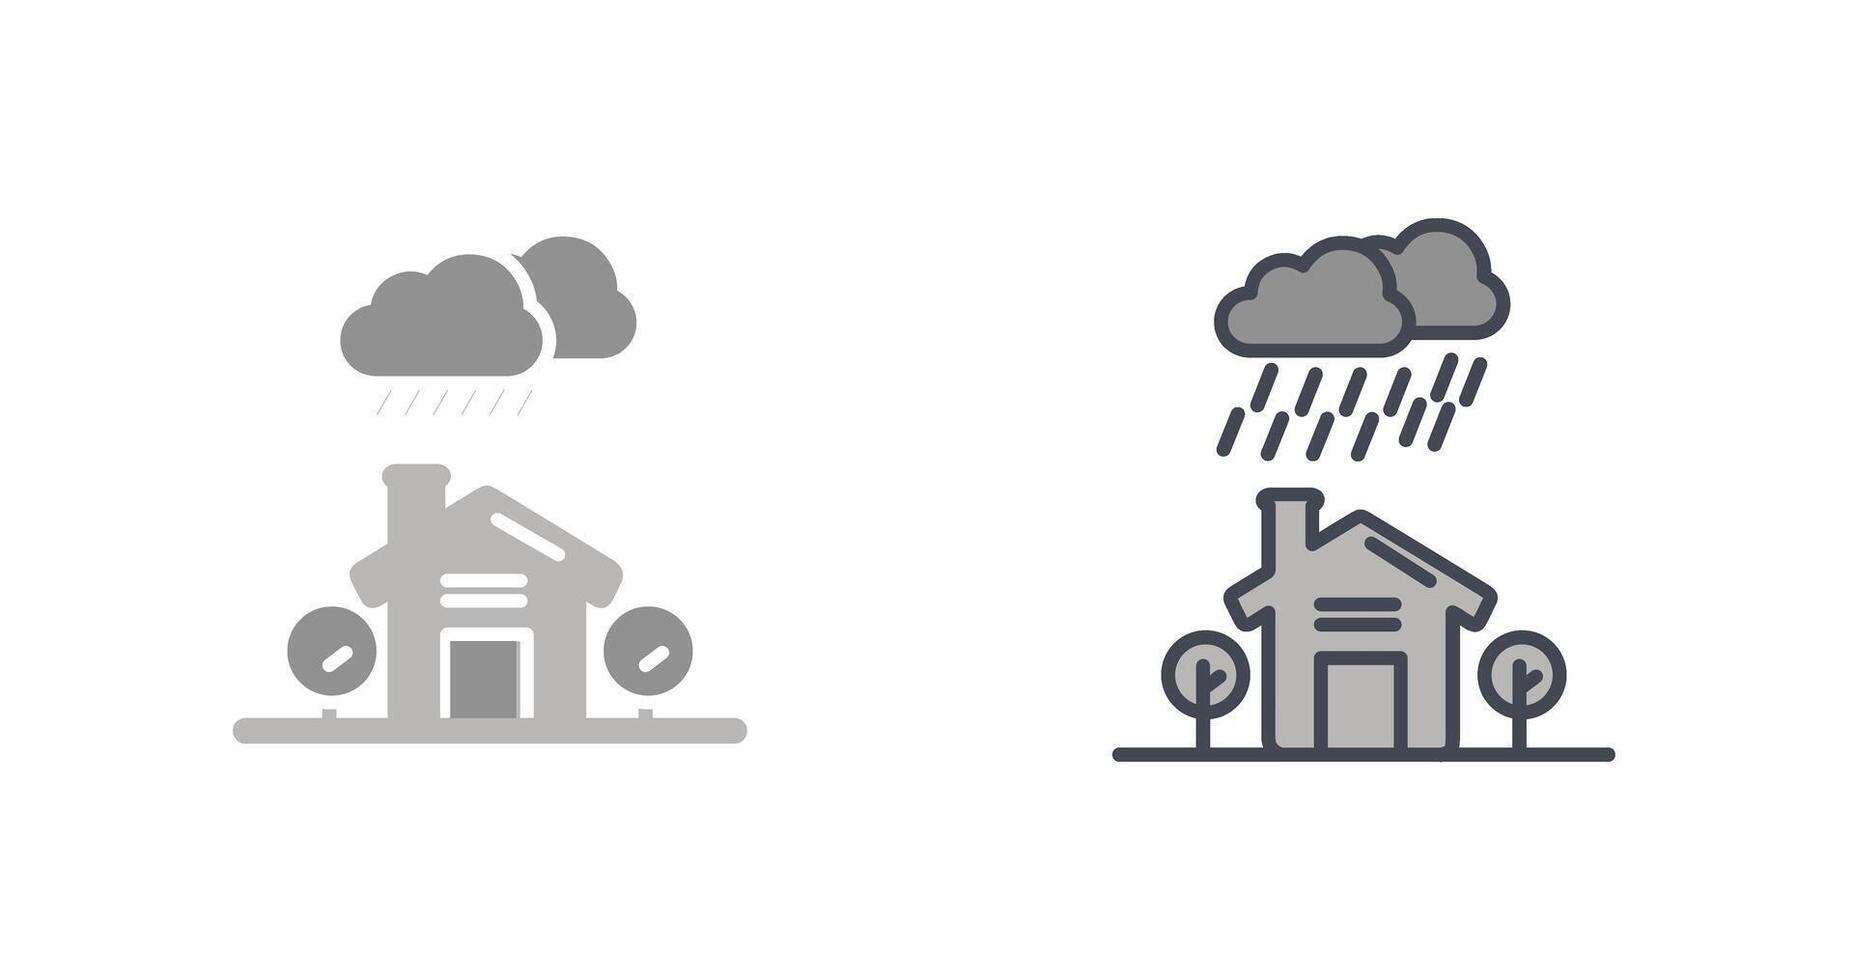 design de ícone de chuva vetor